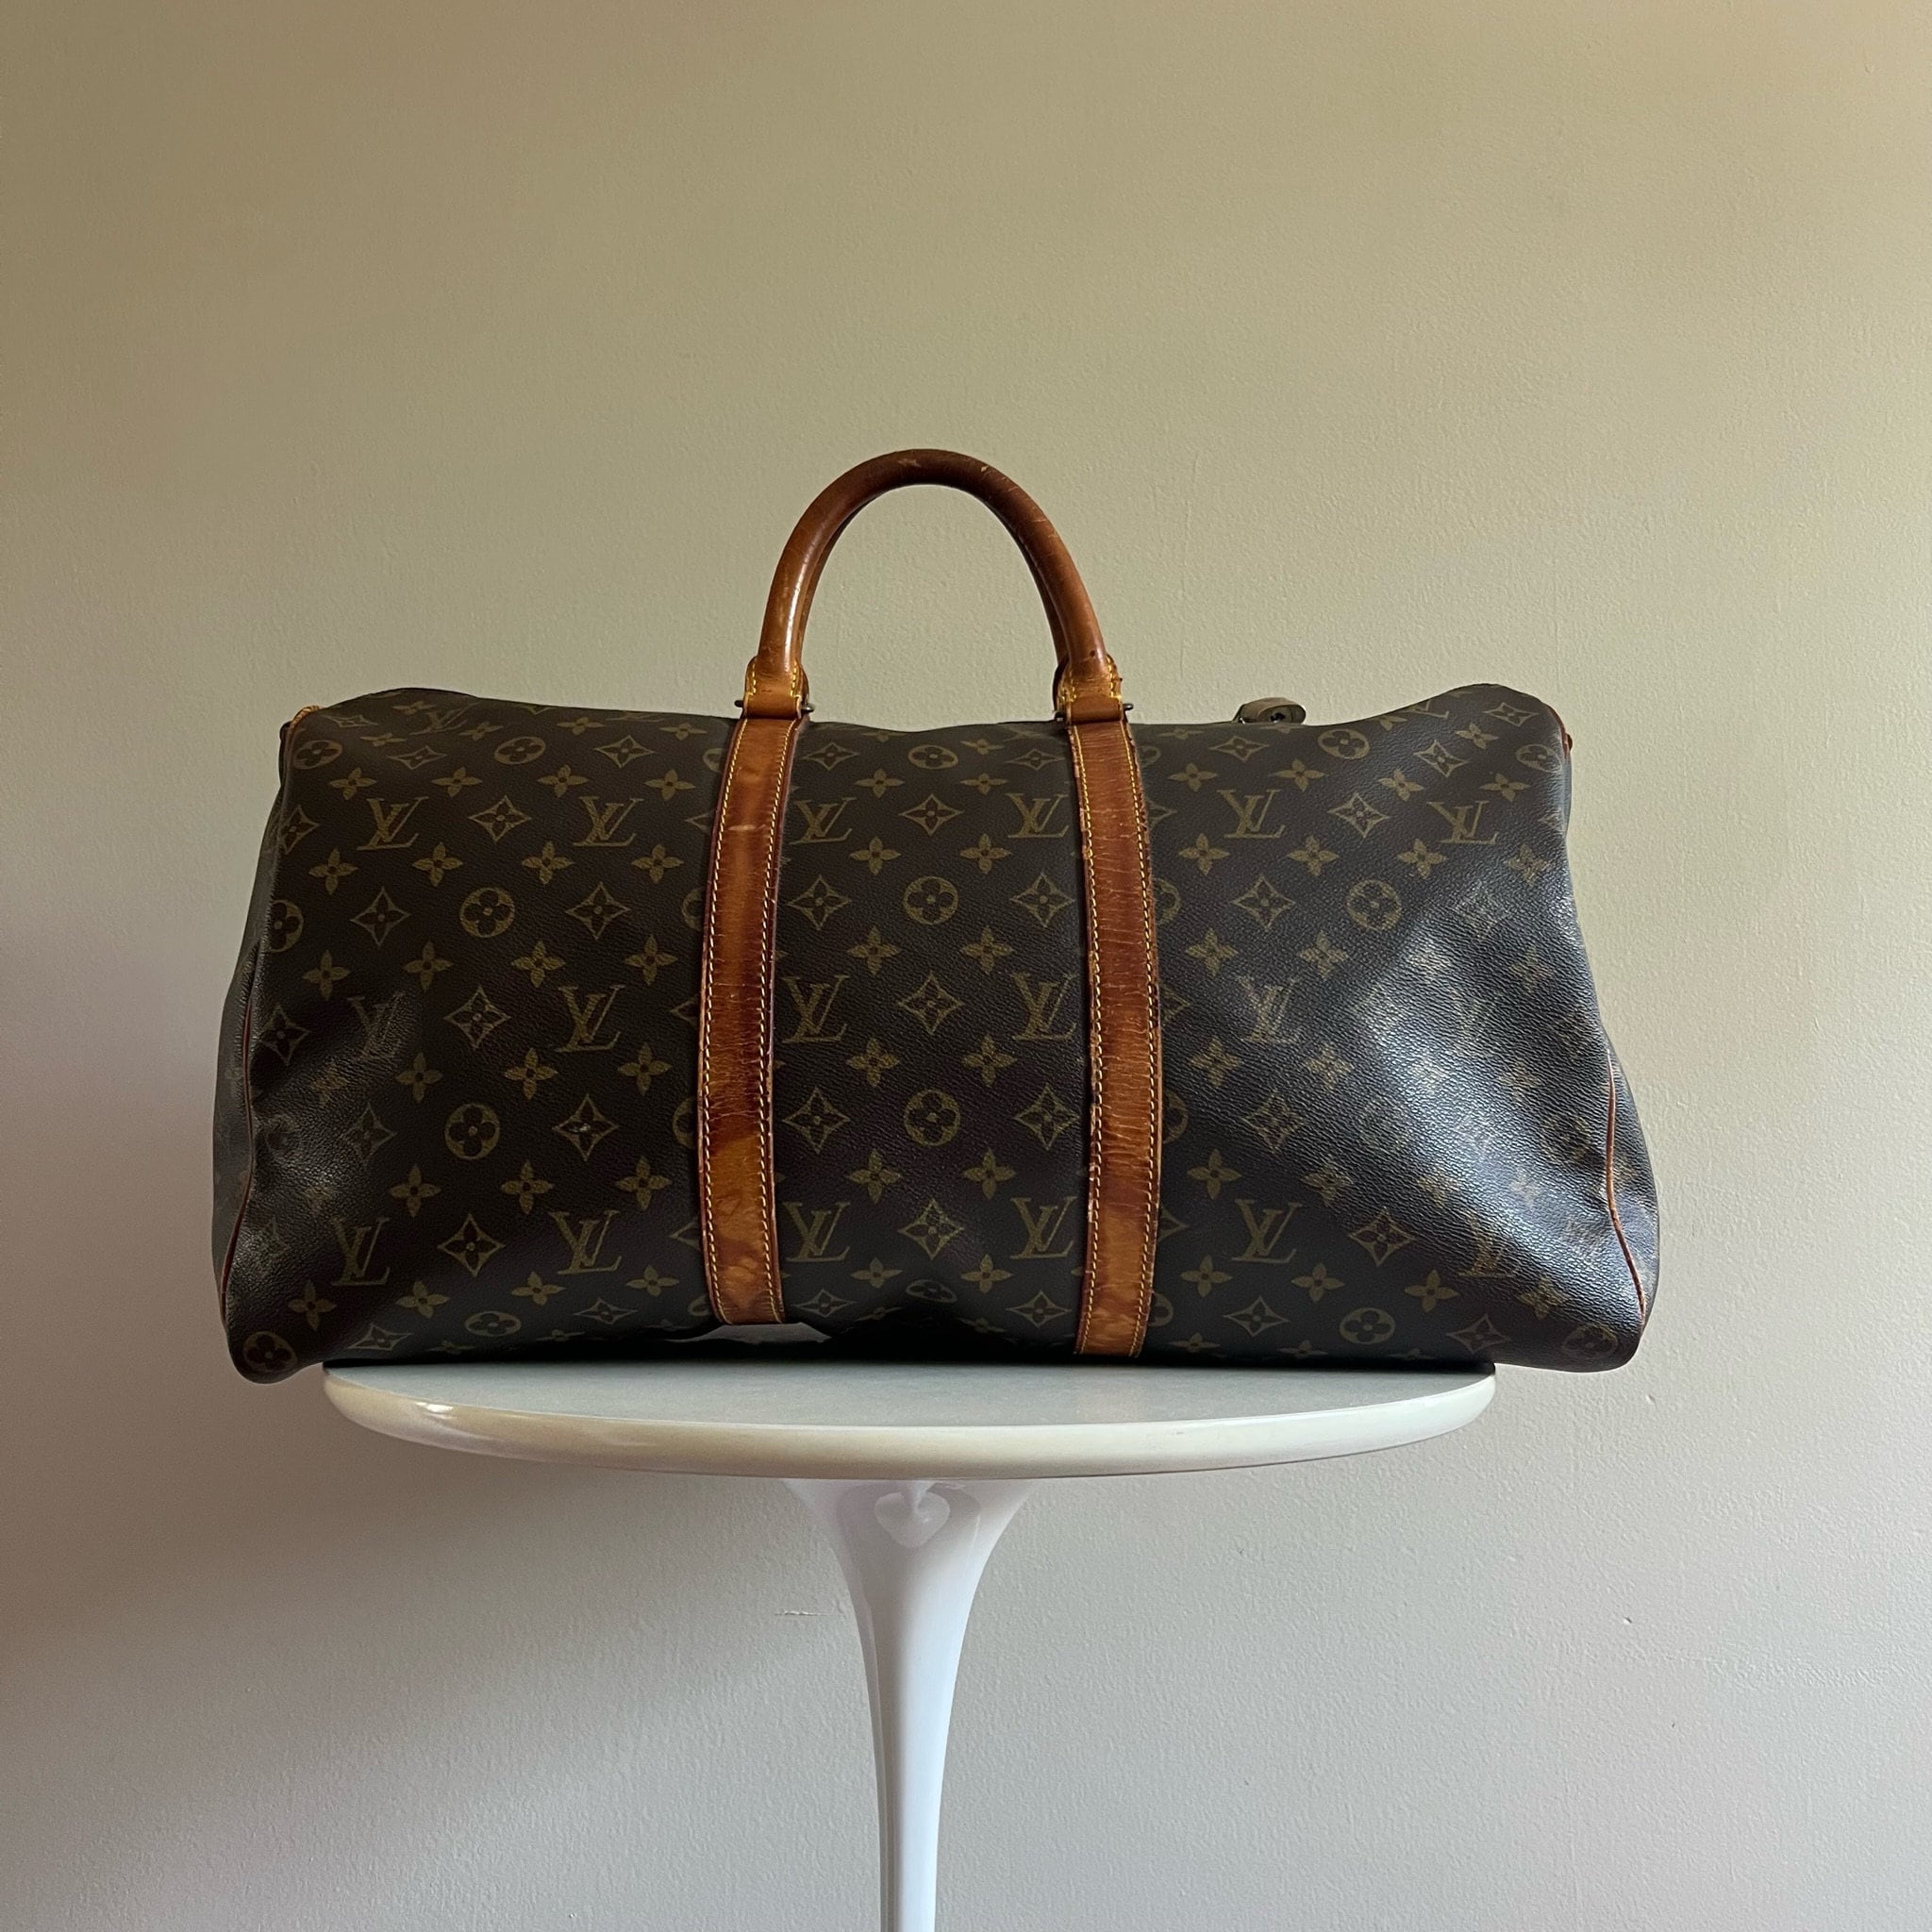 Designer Discreet-Best Replica Handbags Online  Louis vuitton duffle bag, Louis  vuitton keepall 55, Louis vuitton keepall